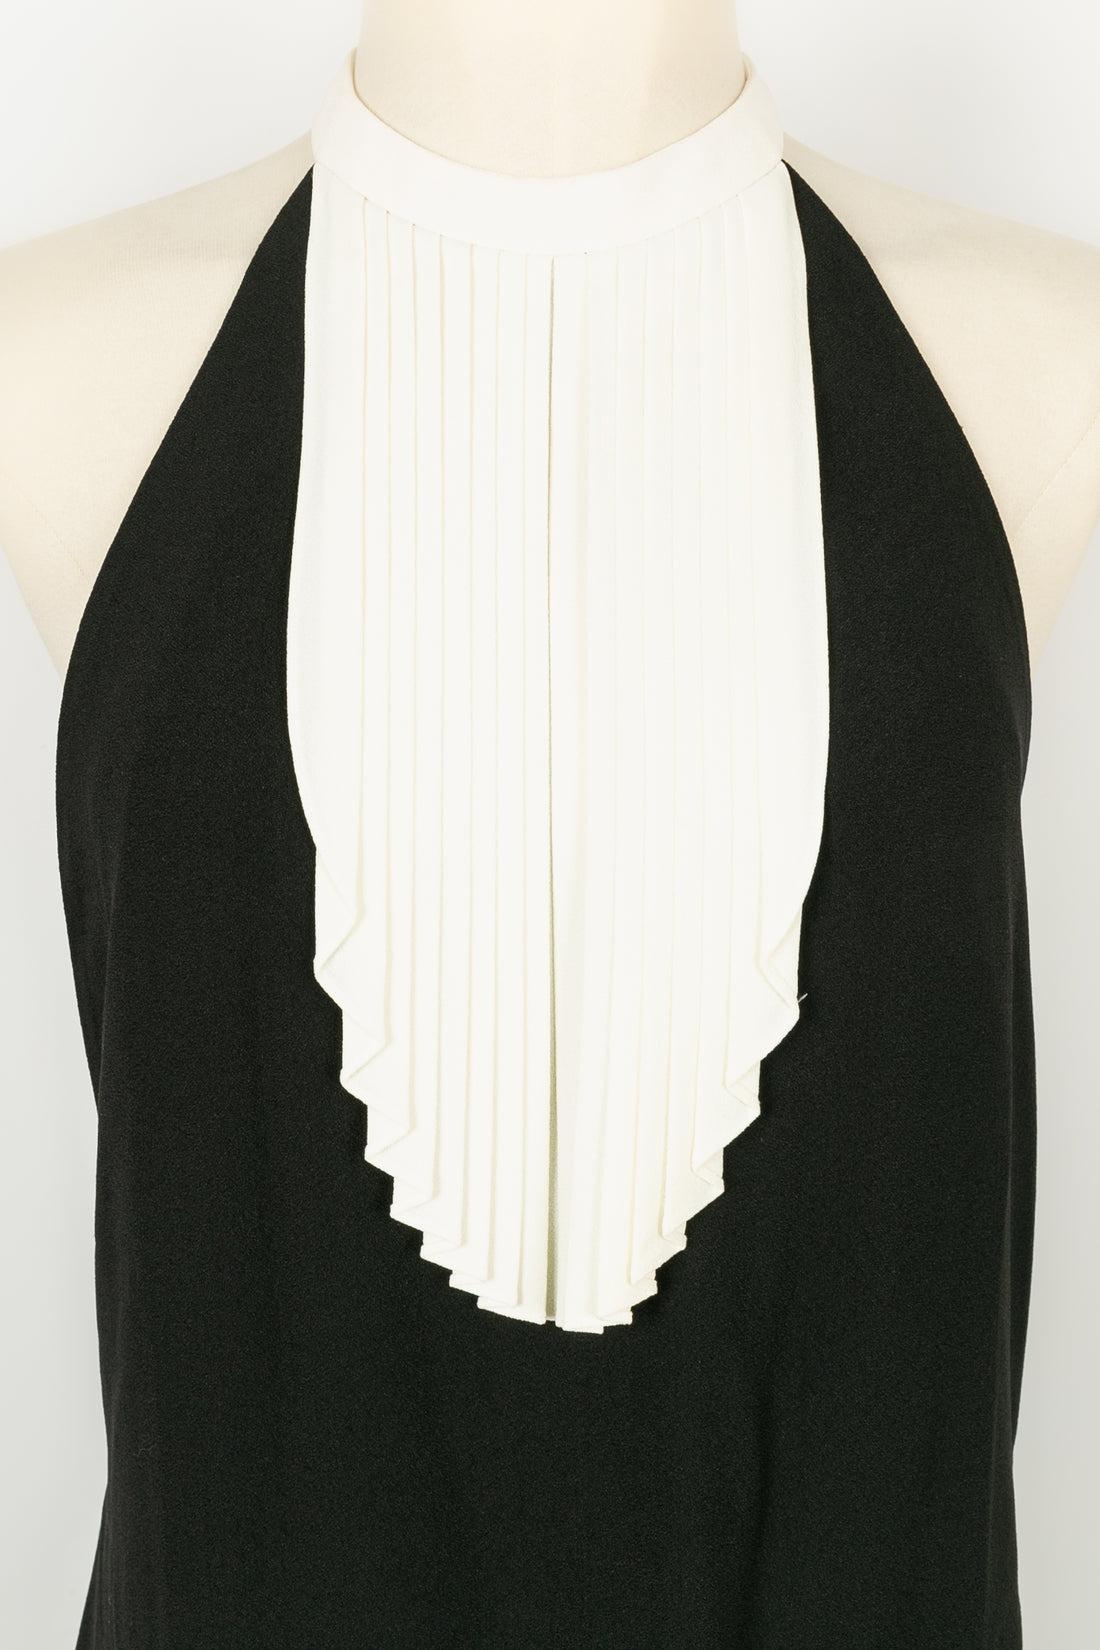 Yves Saint Laurent Short Backless Black and White Dress For Sale 1